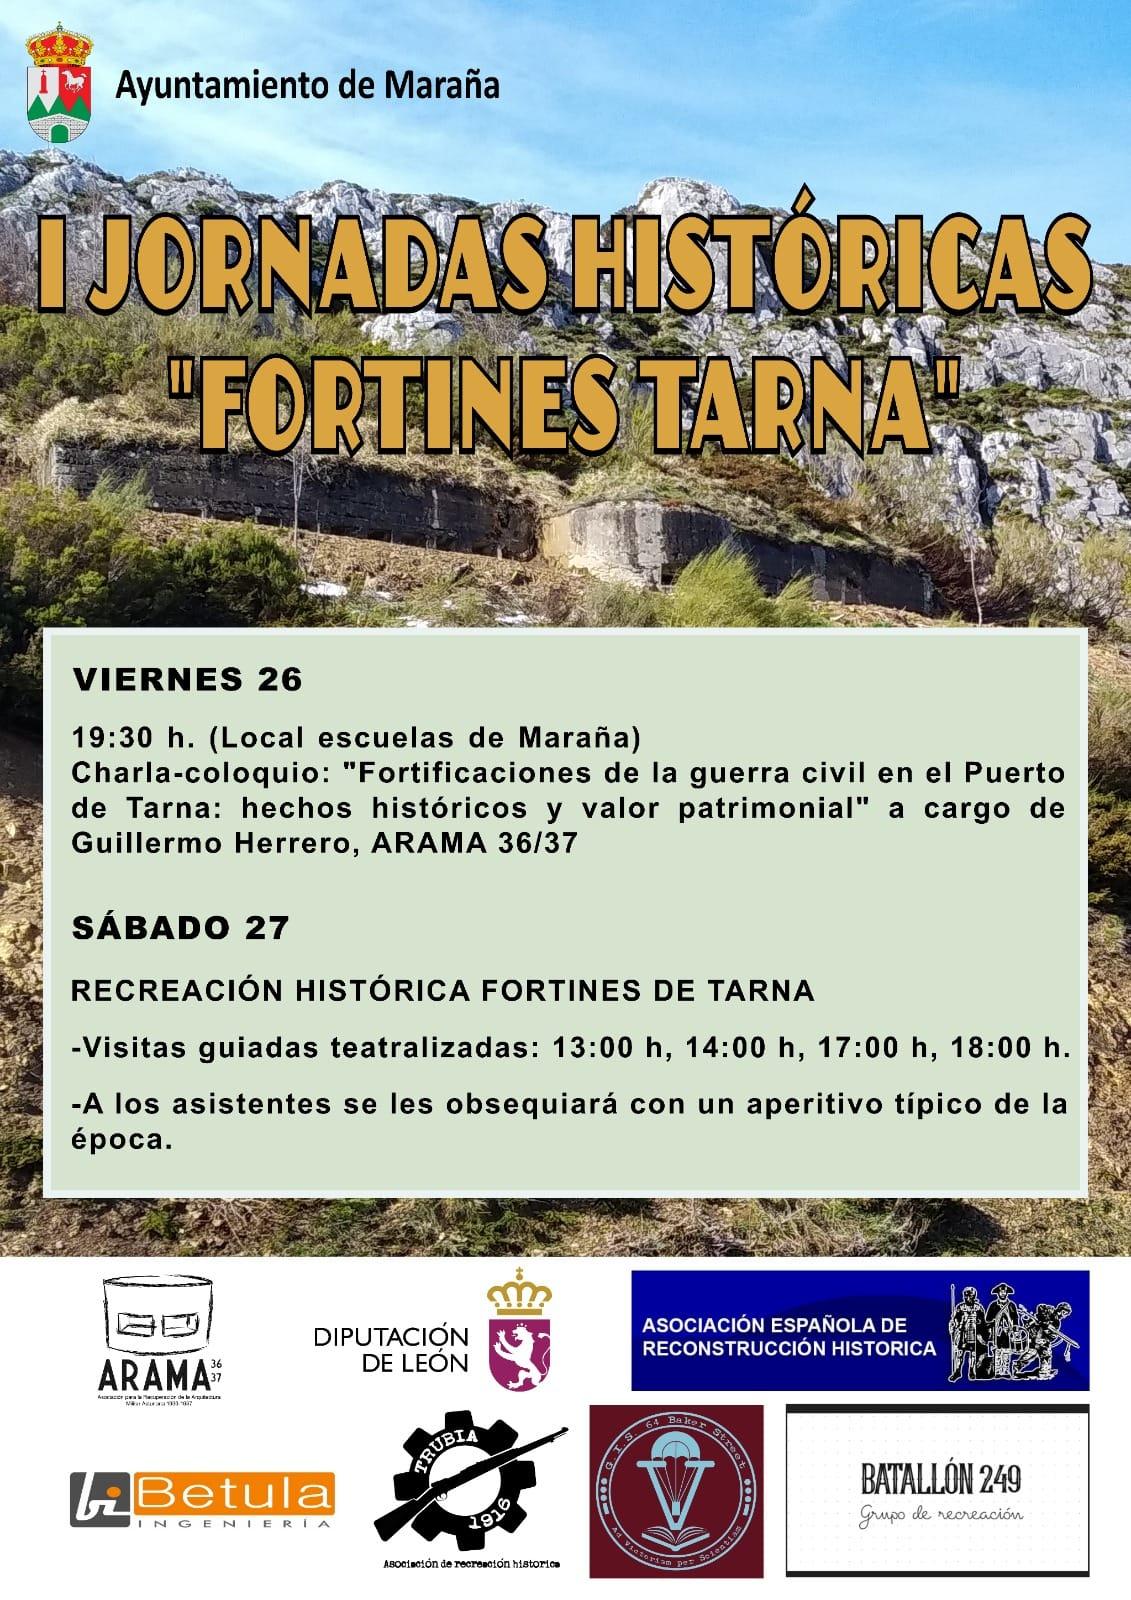 Jornadas históricas "Fortines Tarna".0